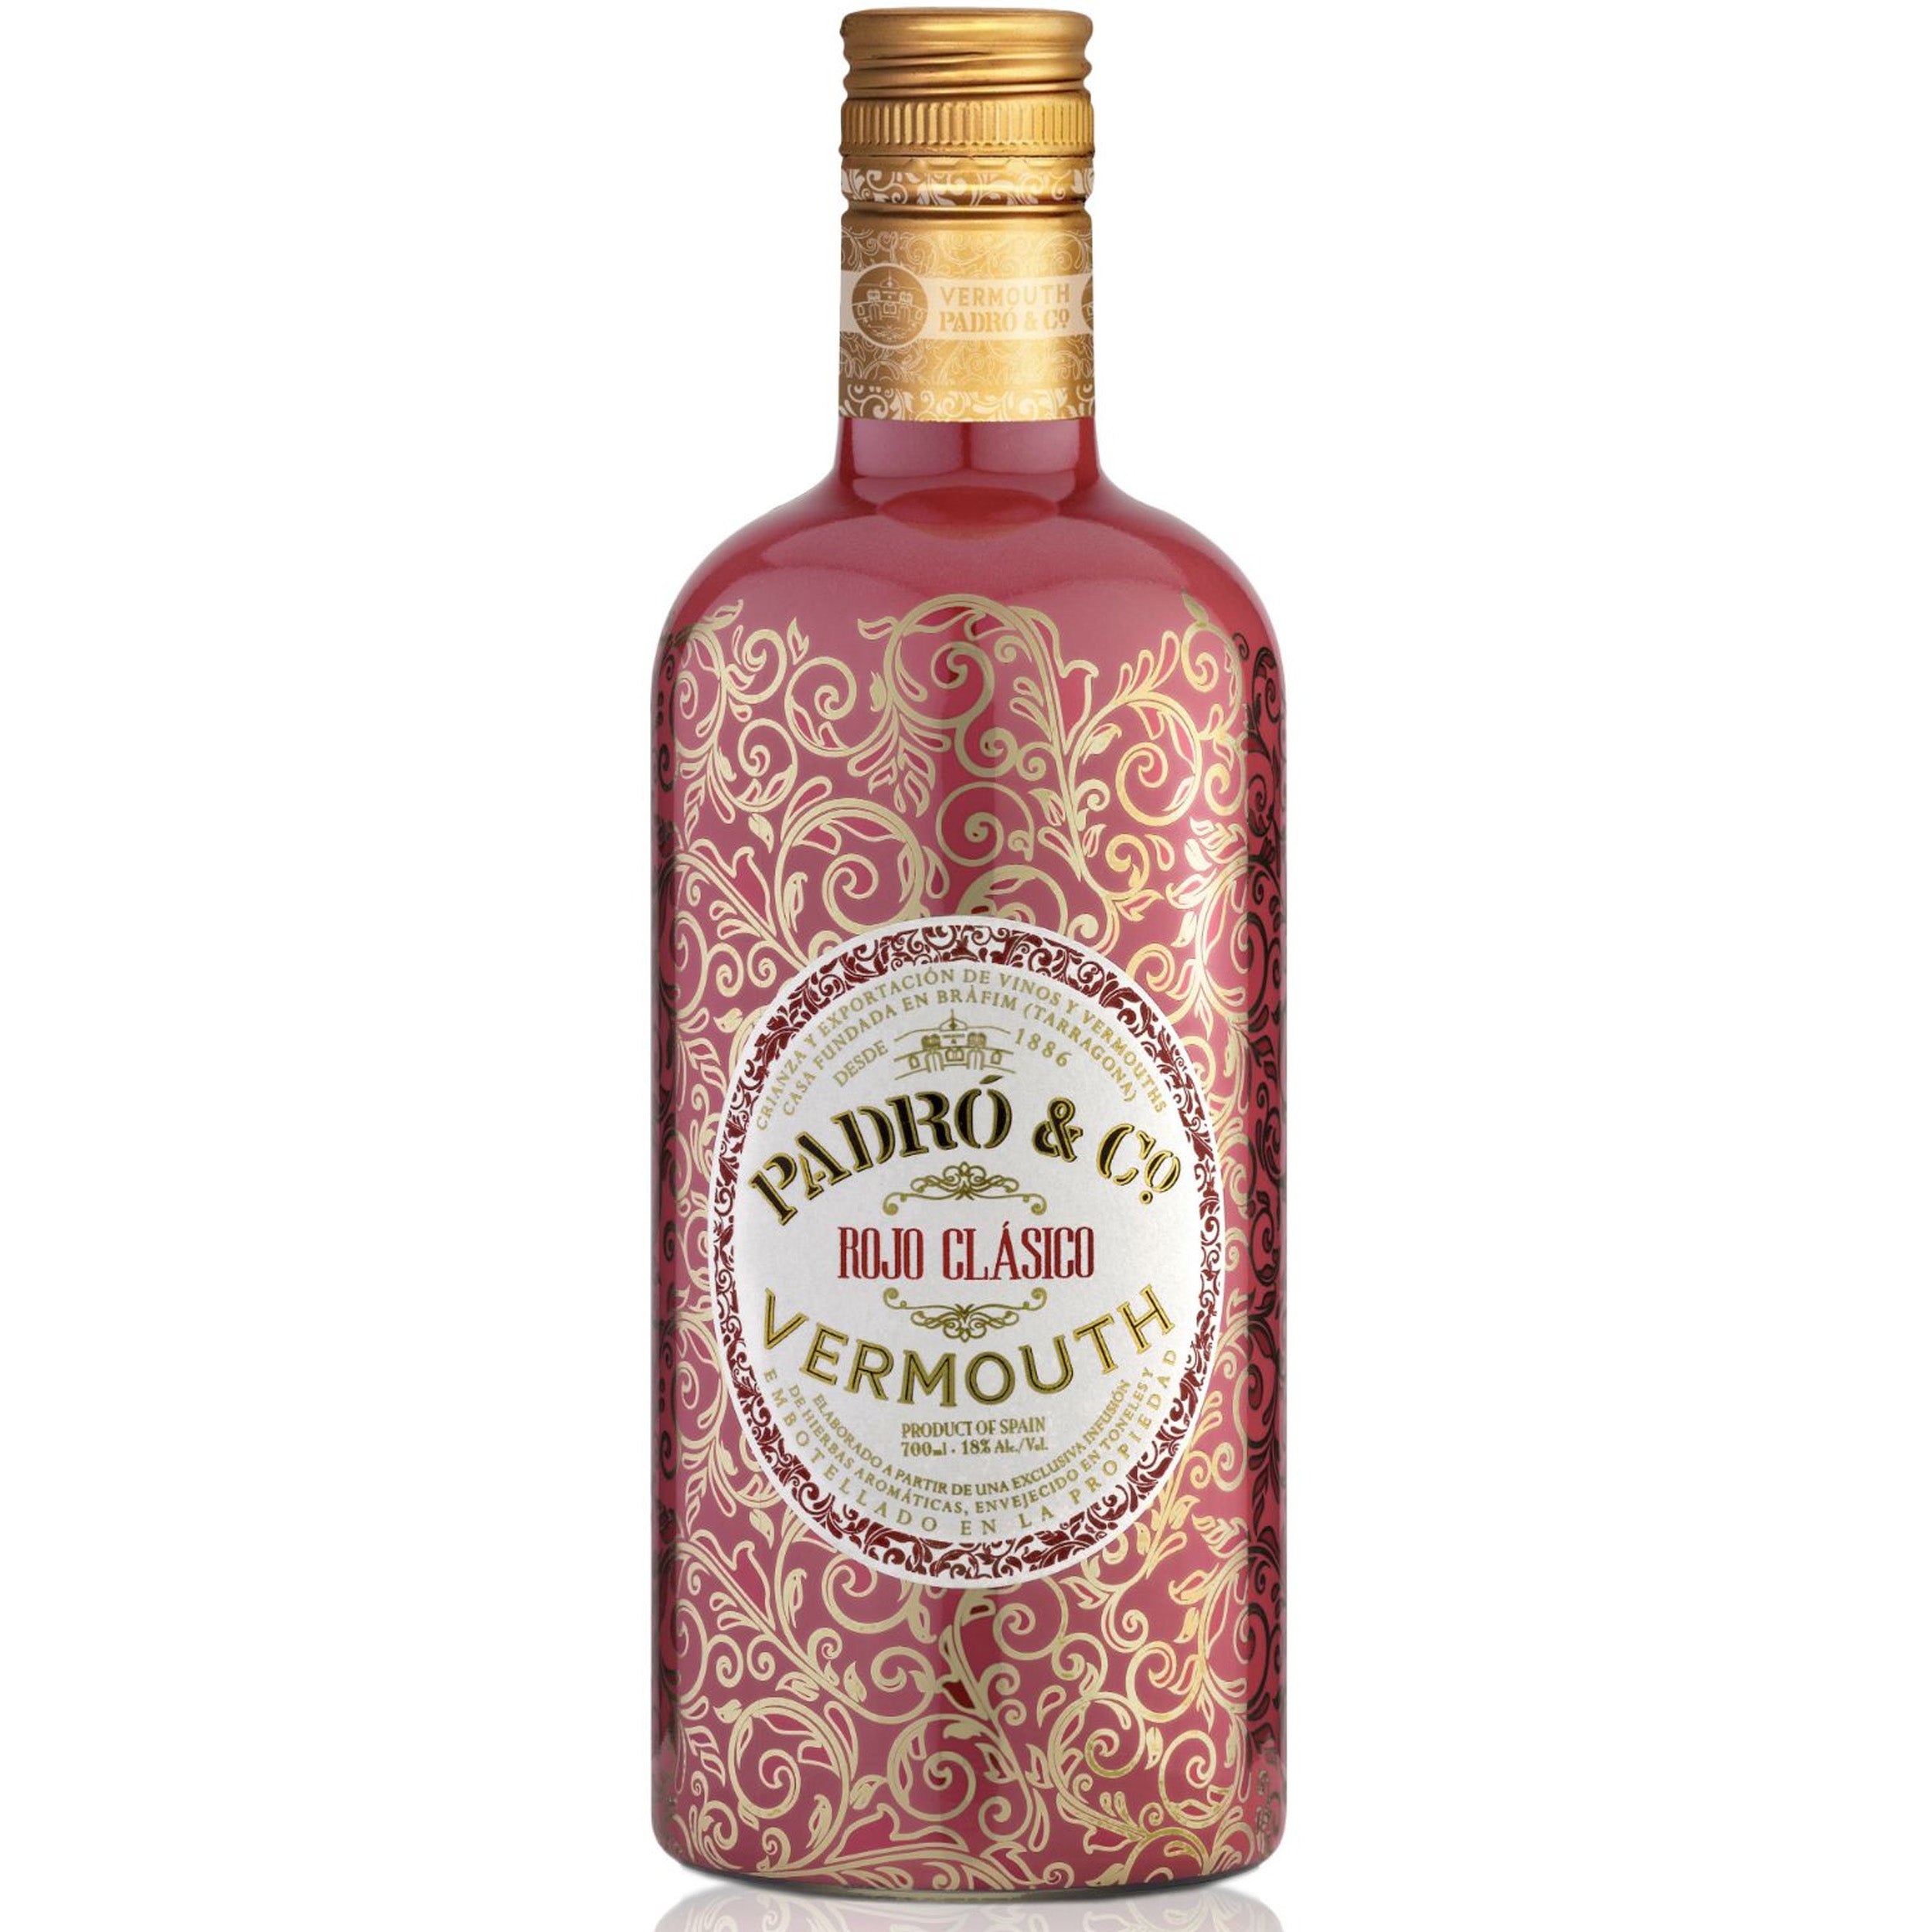 Padro & Co. Rojo Clasico Vermouth